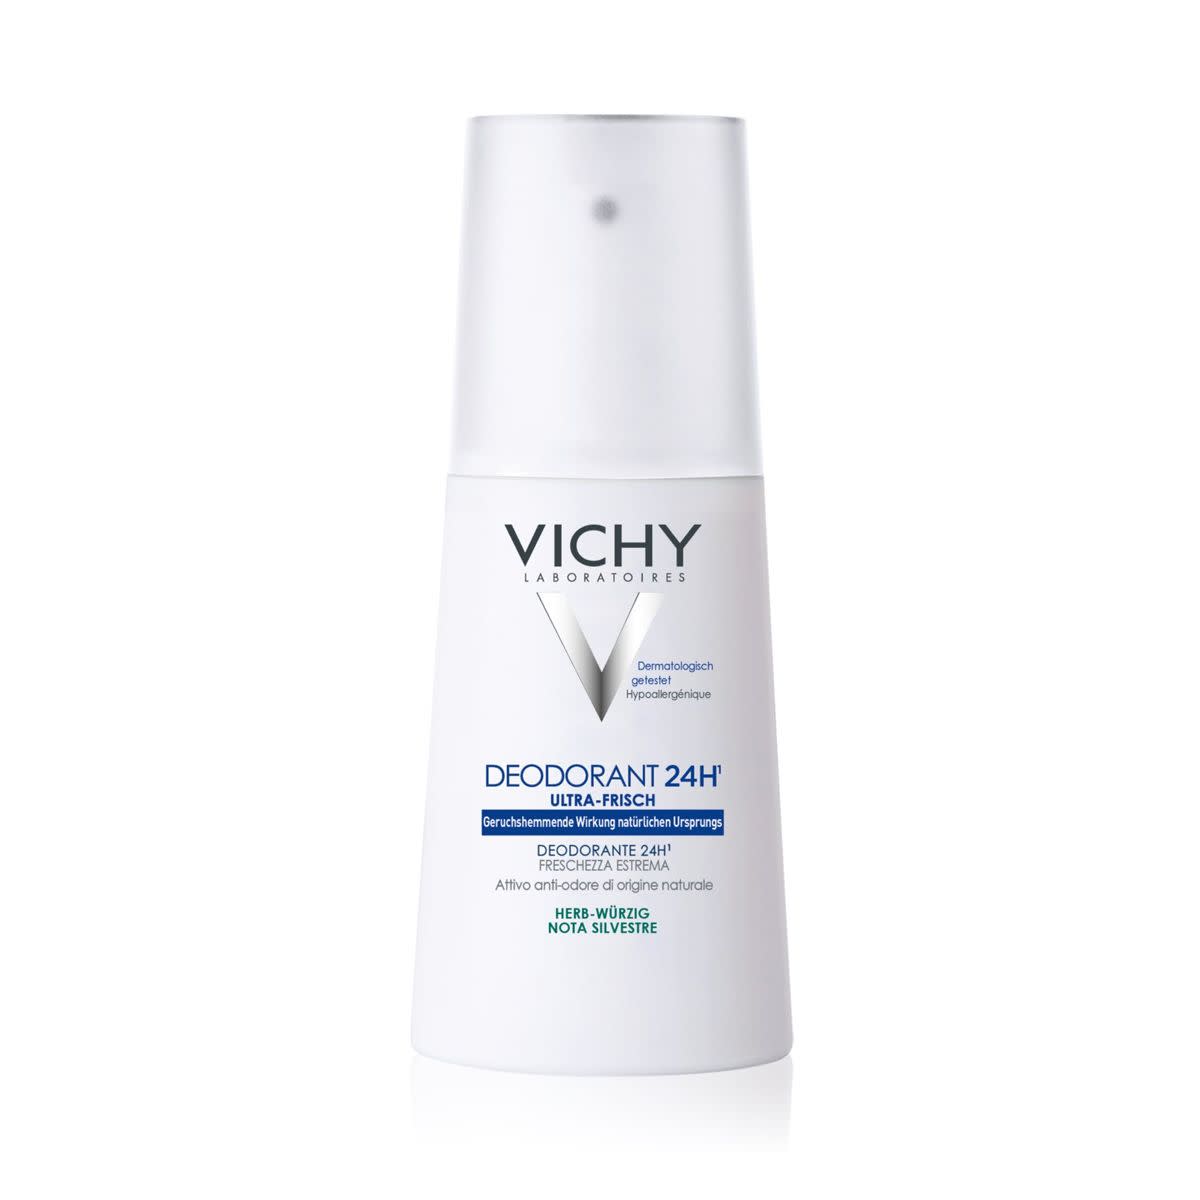 907280693 - Vichy Deodorante vapo Freschezza estrema 100ml - 7873811_2.jpg